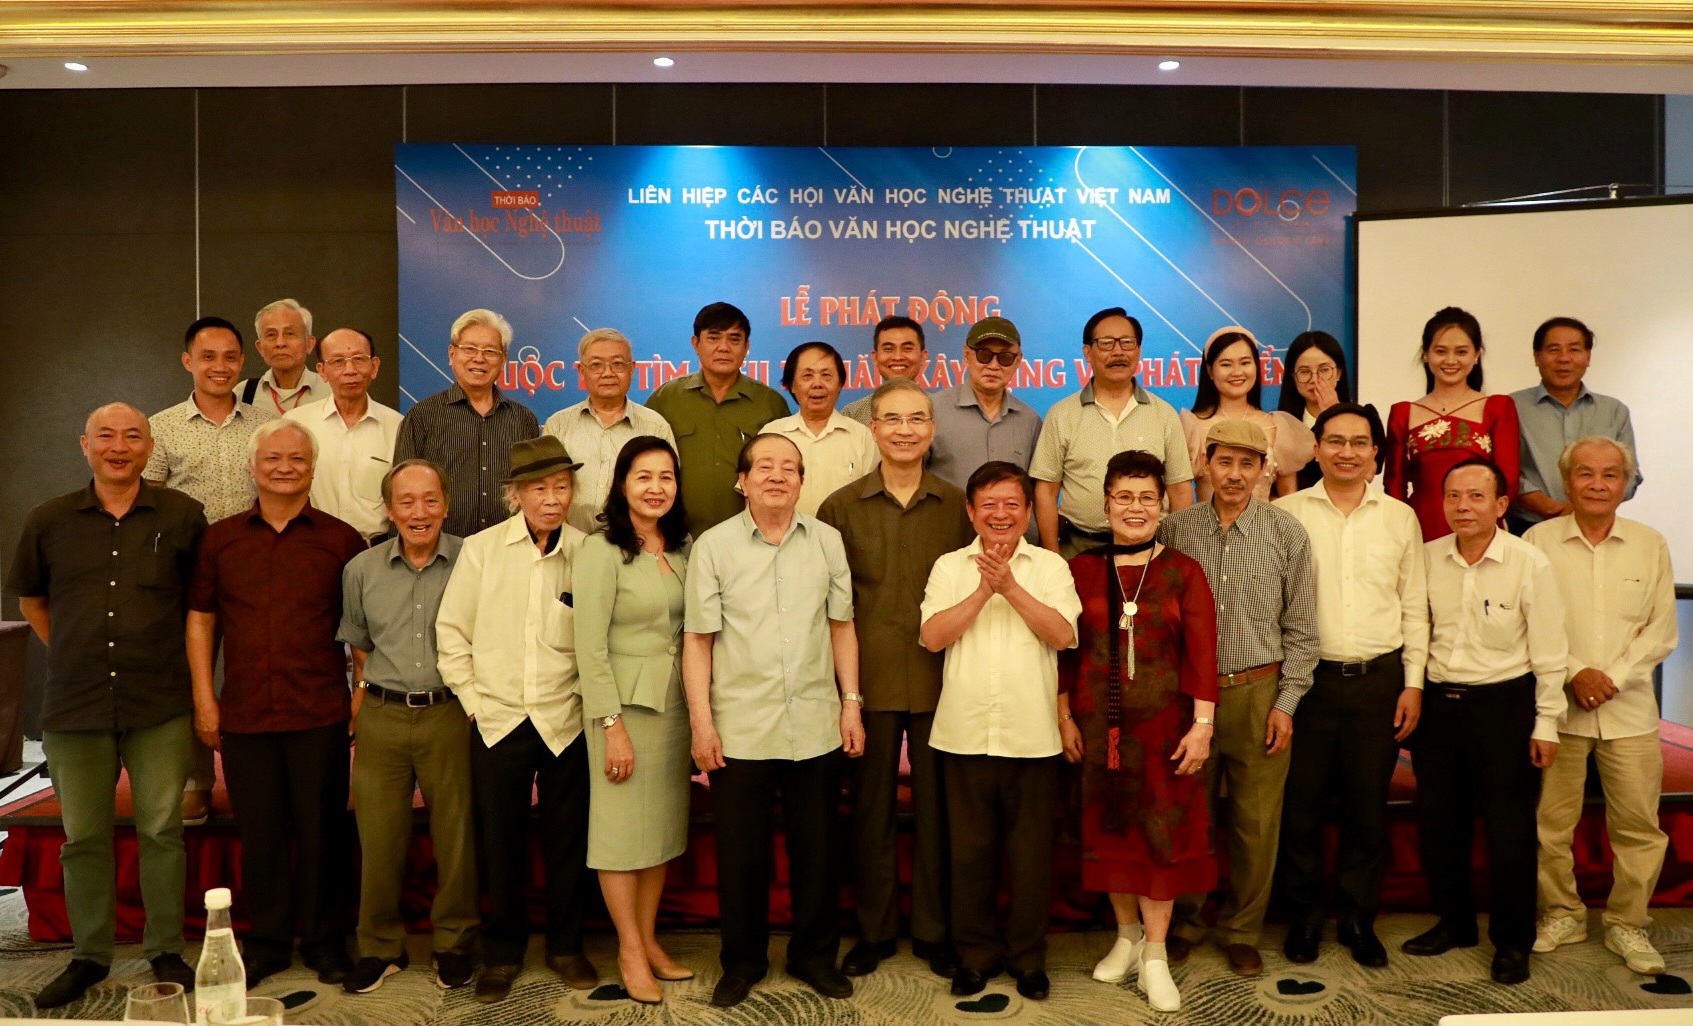 (Ảnh) Những dấu ấn đặc biệt của cuộc thi Tìm hiểu 75 năm xây dựng và phát triển Liên hiệp các Hội Văn học nghệ thuật Việt Nam - 2